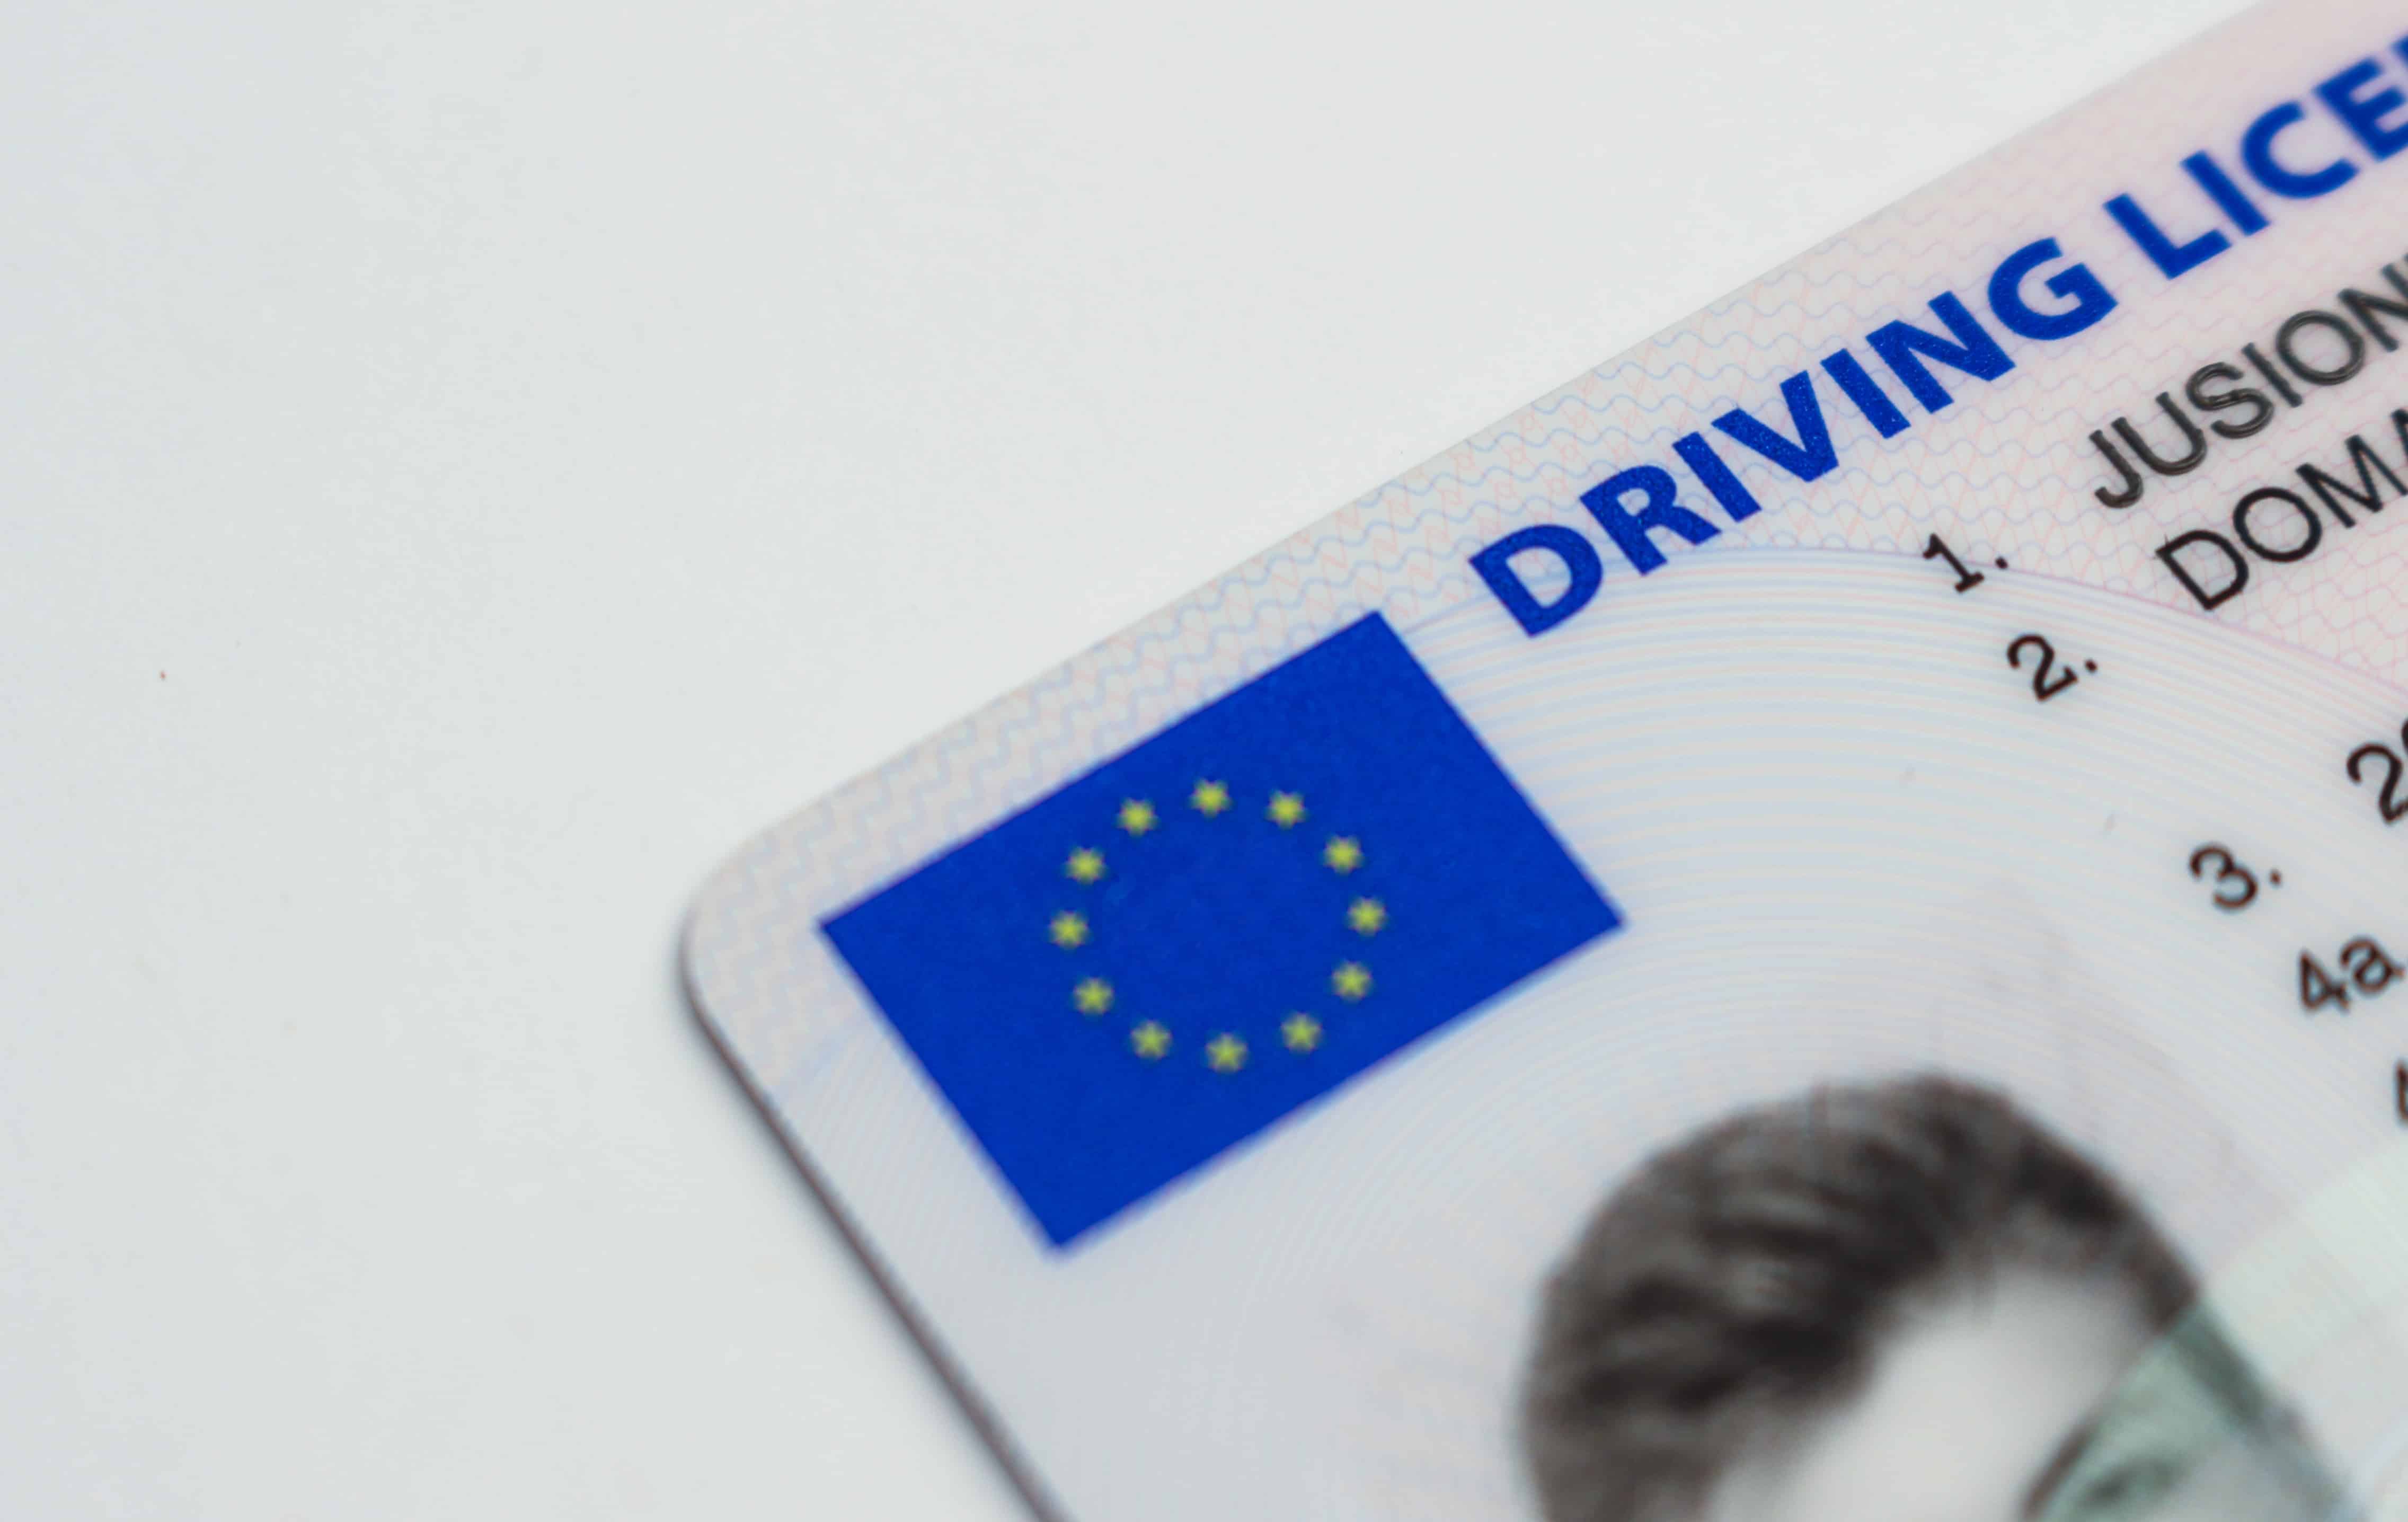 Les points du permis de conduire, quelles sont les infractions qui en font perdre, comment connaître son solde et comment les récupérer ?